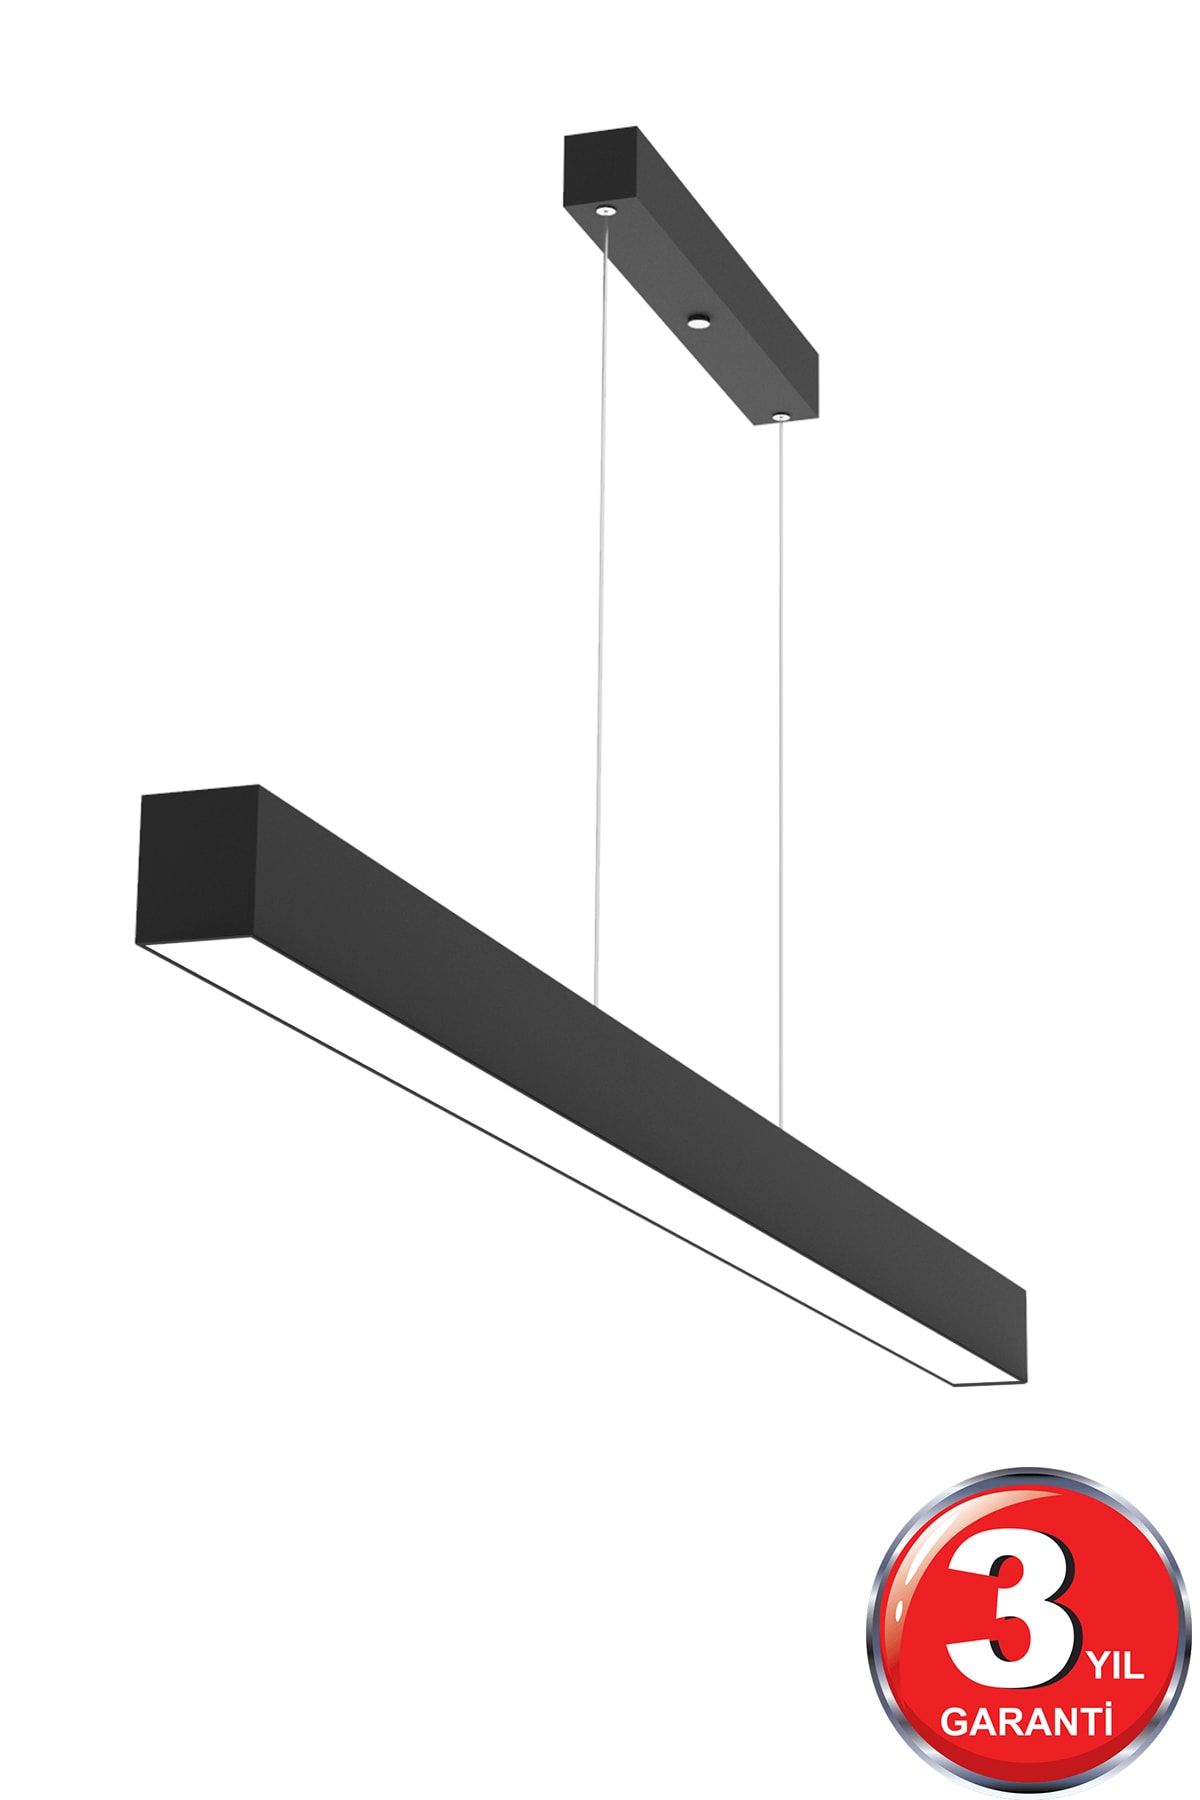 Hegza Lighting Lineer 120cm ( Siyah Kasa, Beyaz Işık ) Ledli Sarkıt Modern Led Avize, Salon, Mutfak, Lineer Avize